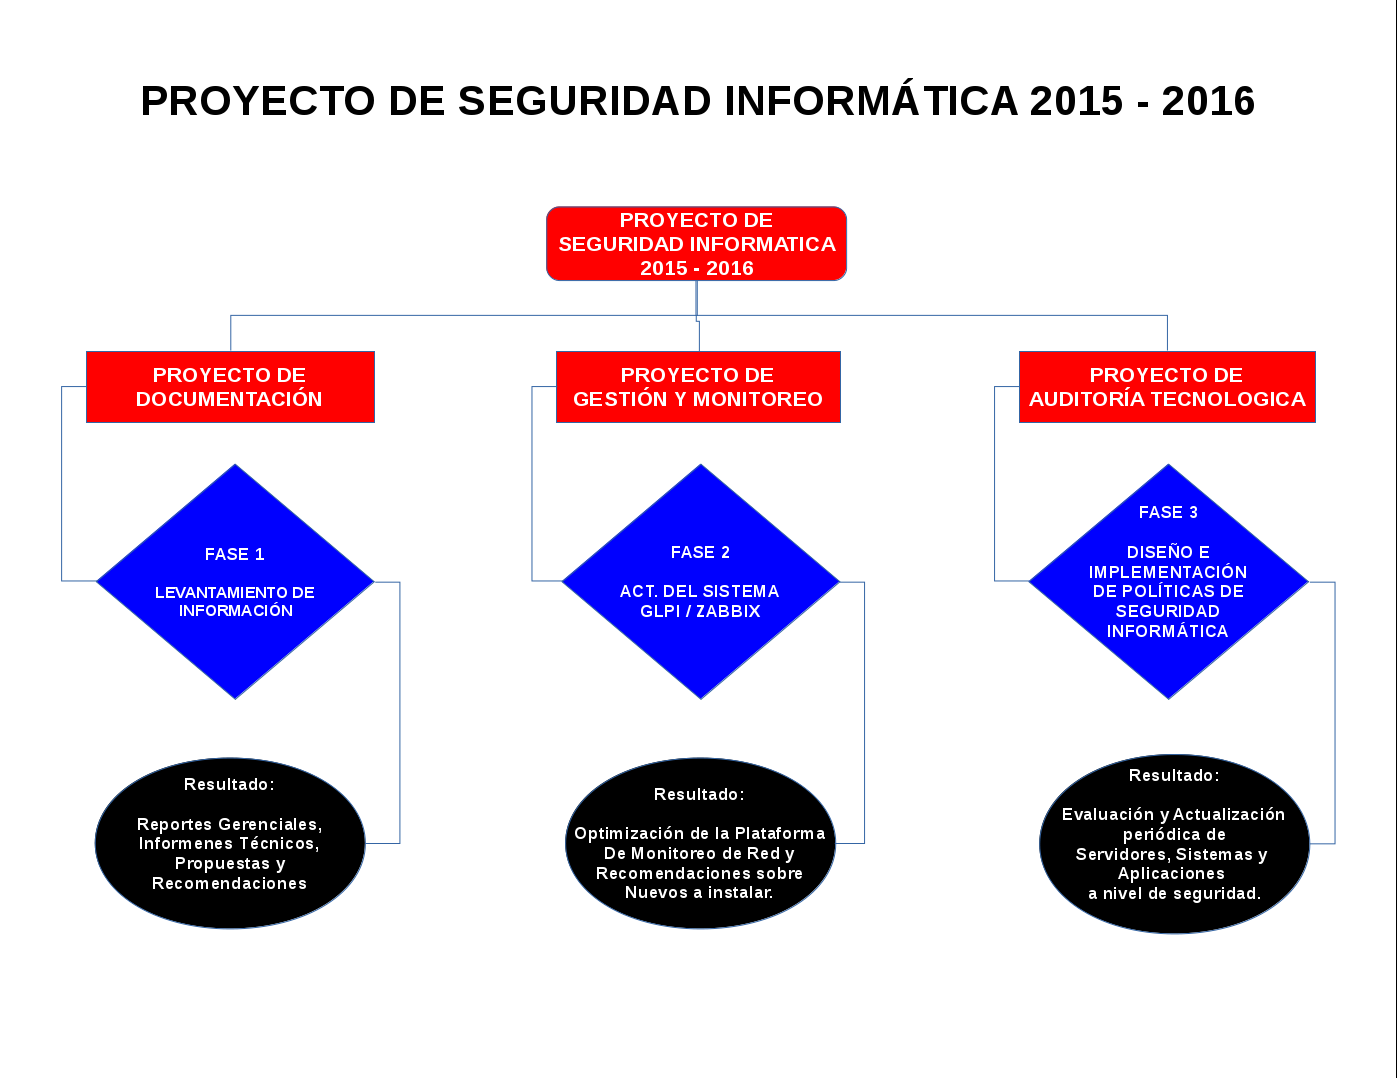 PROYECTO DE SEGURIDAD INFORMATICA 2015 - 2016